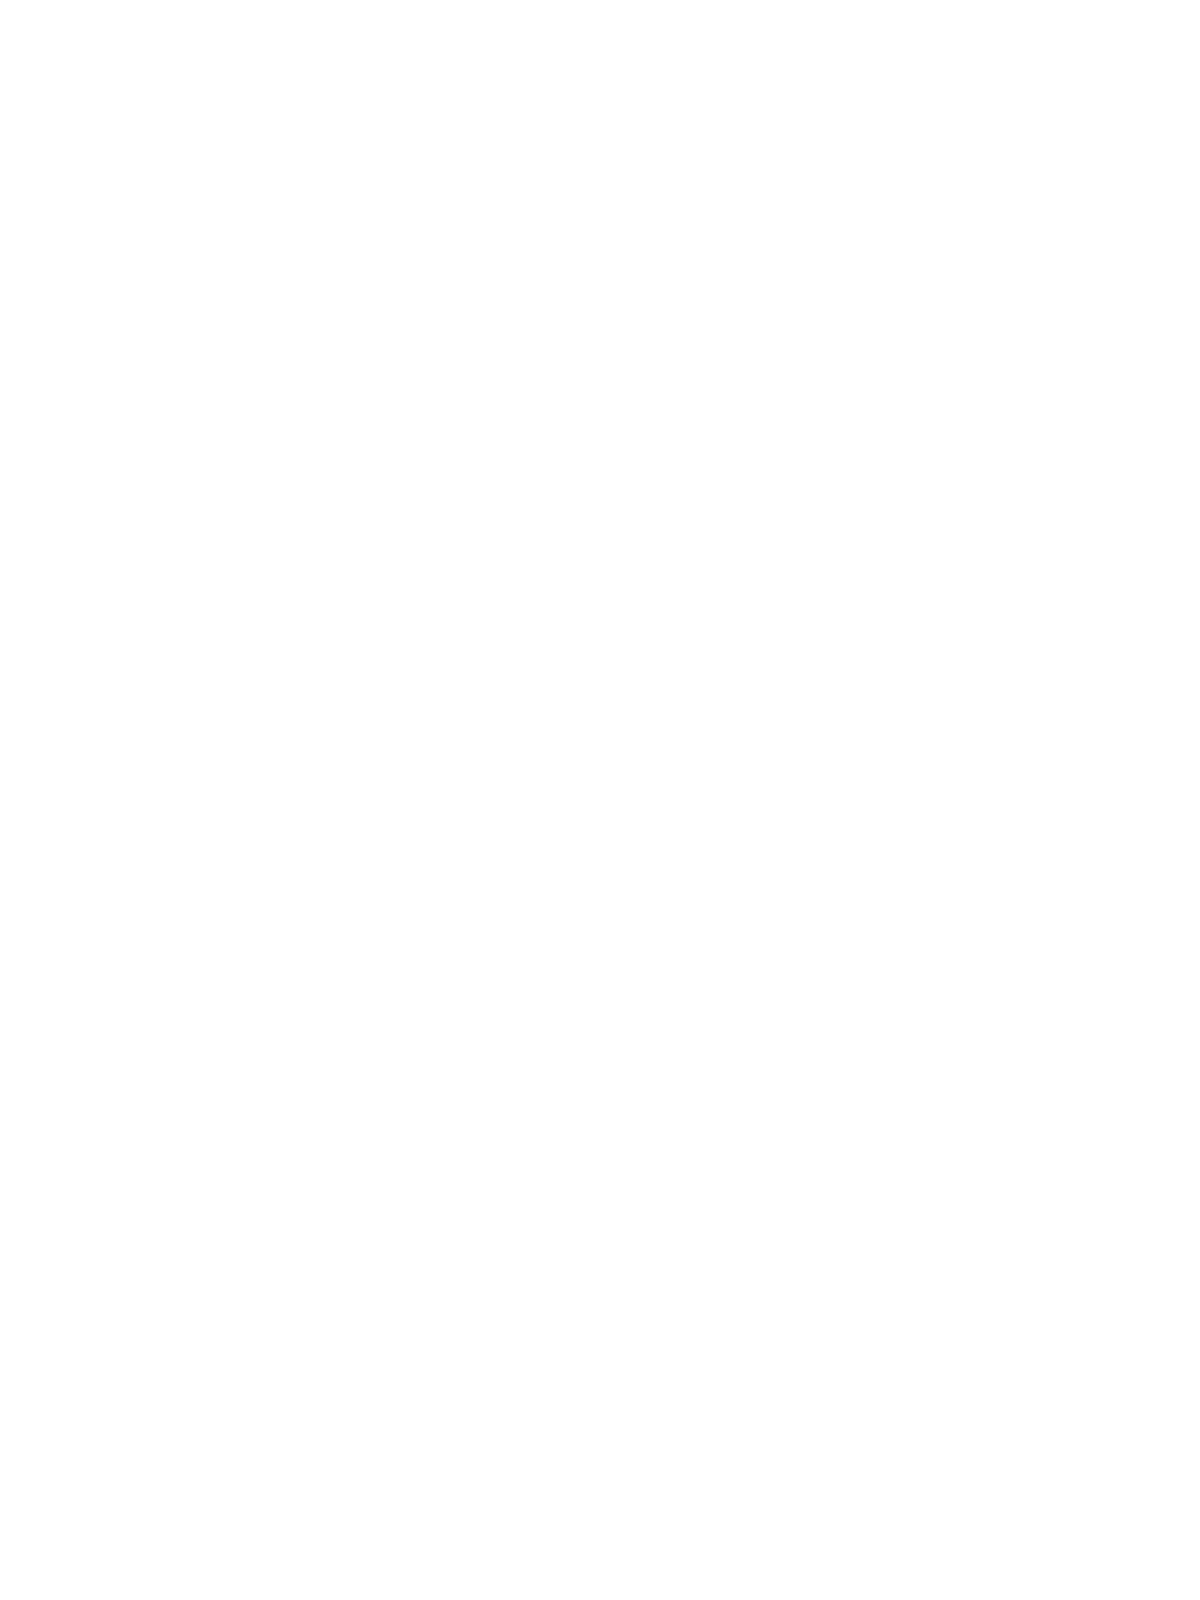 乃木坂46・与田祐希、“大人な一面”が印象的な3パターンの限定表紙を公開サムネイル画像!